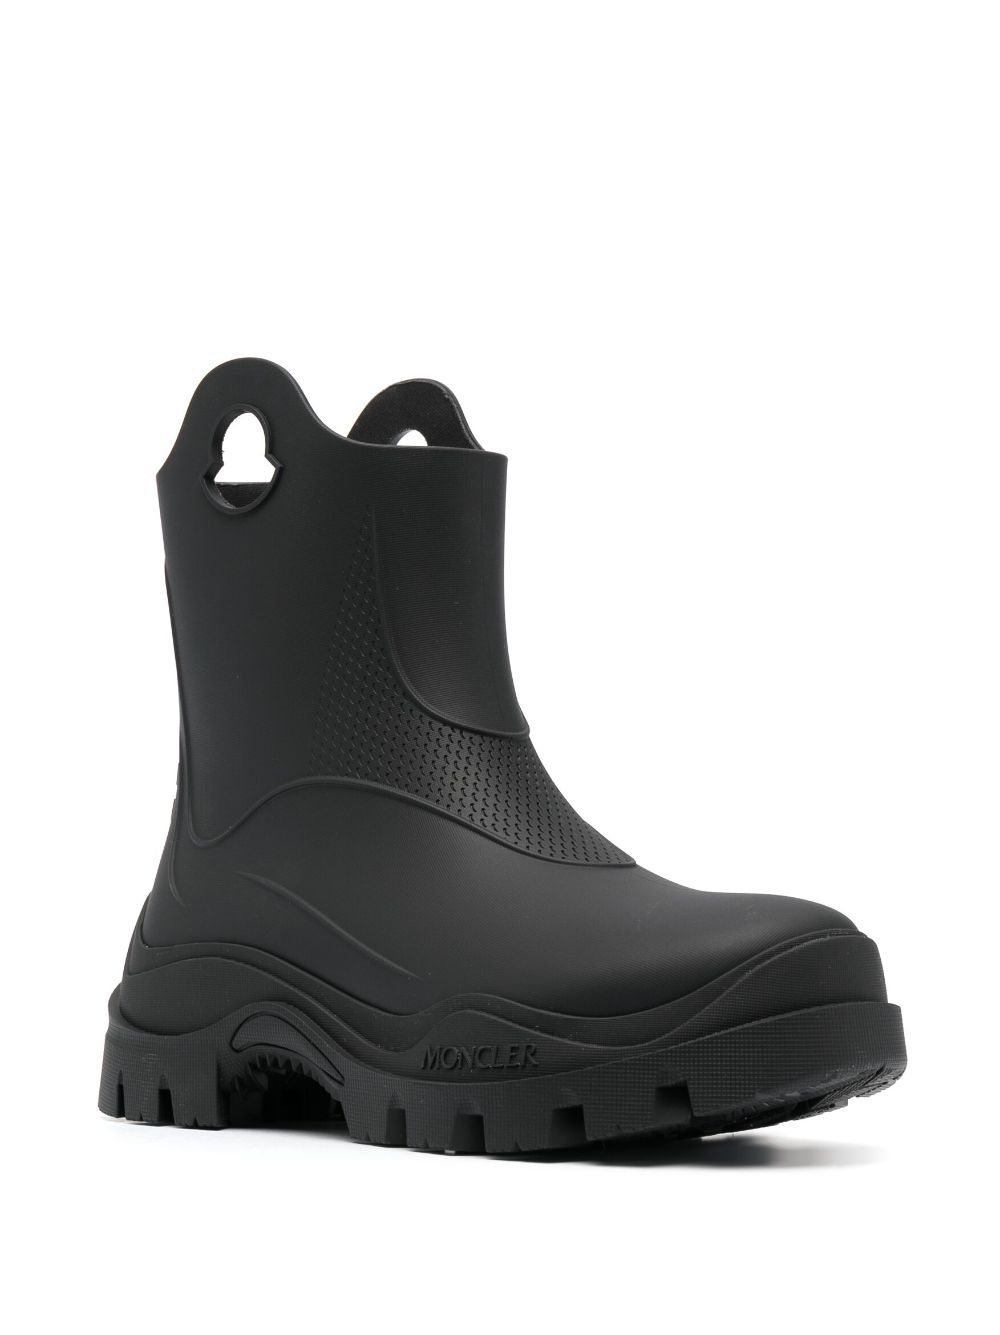 Shop Moncler Misty Rain Boots